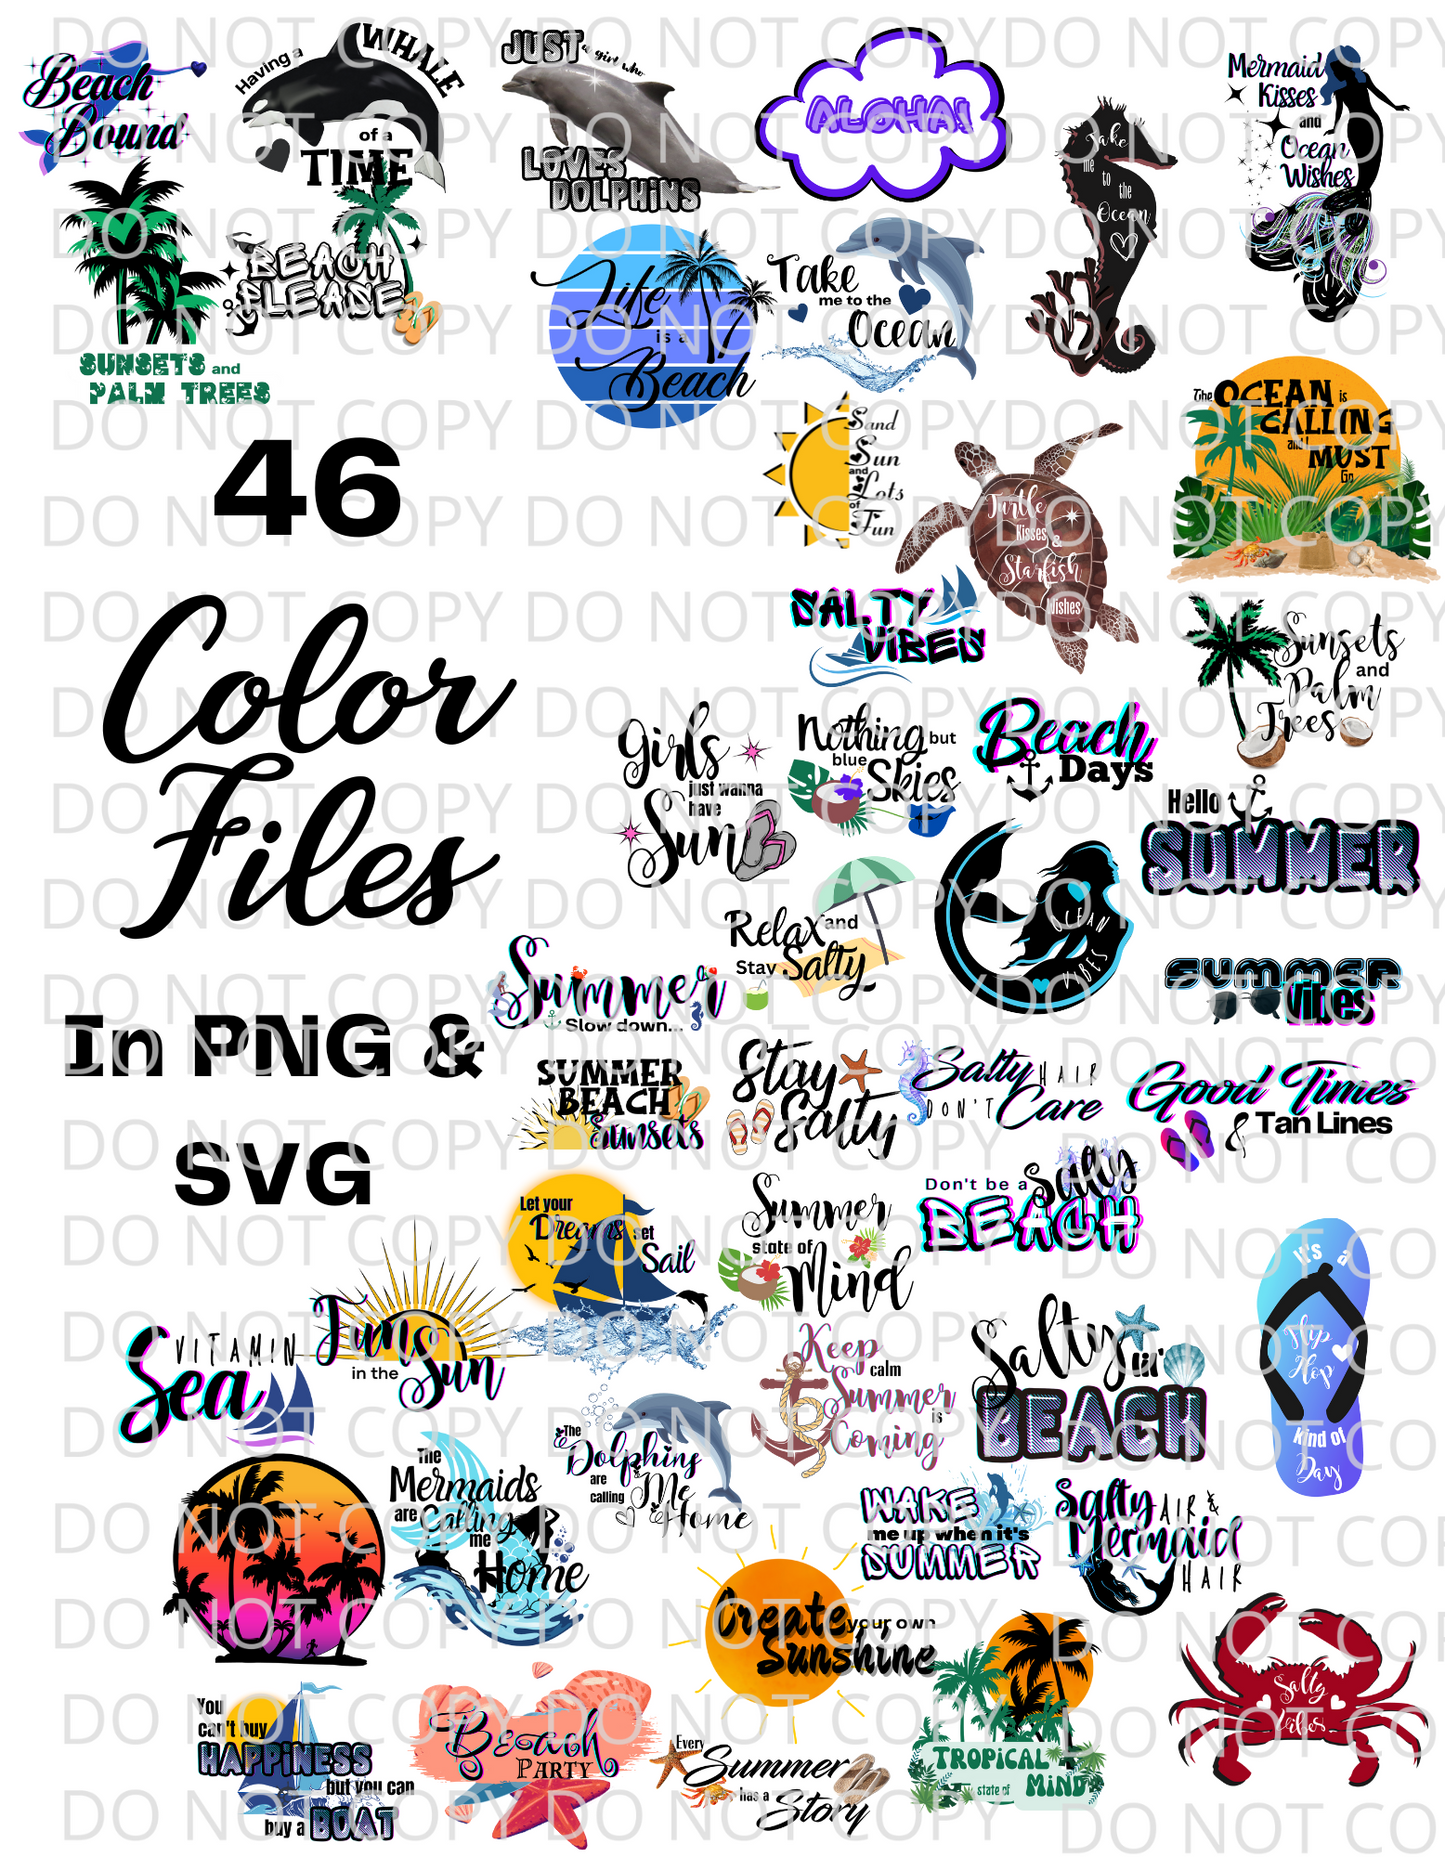 BGShop 90 Total Digital Download Summer Sayings | 46 Color & 44 Solid Black Files